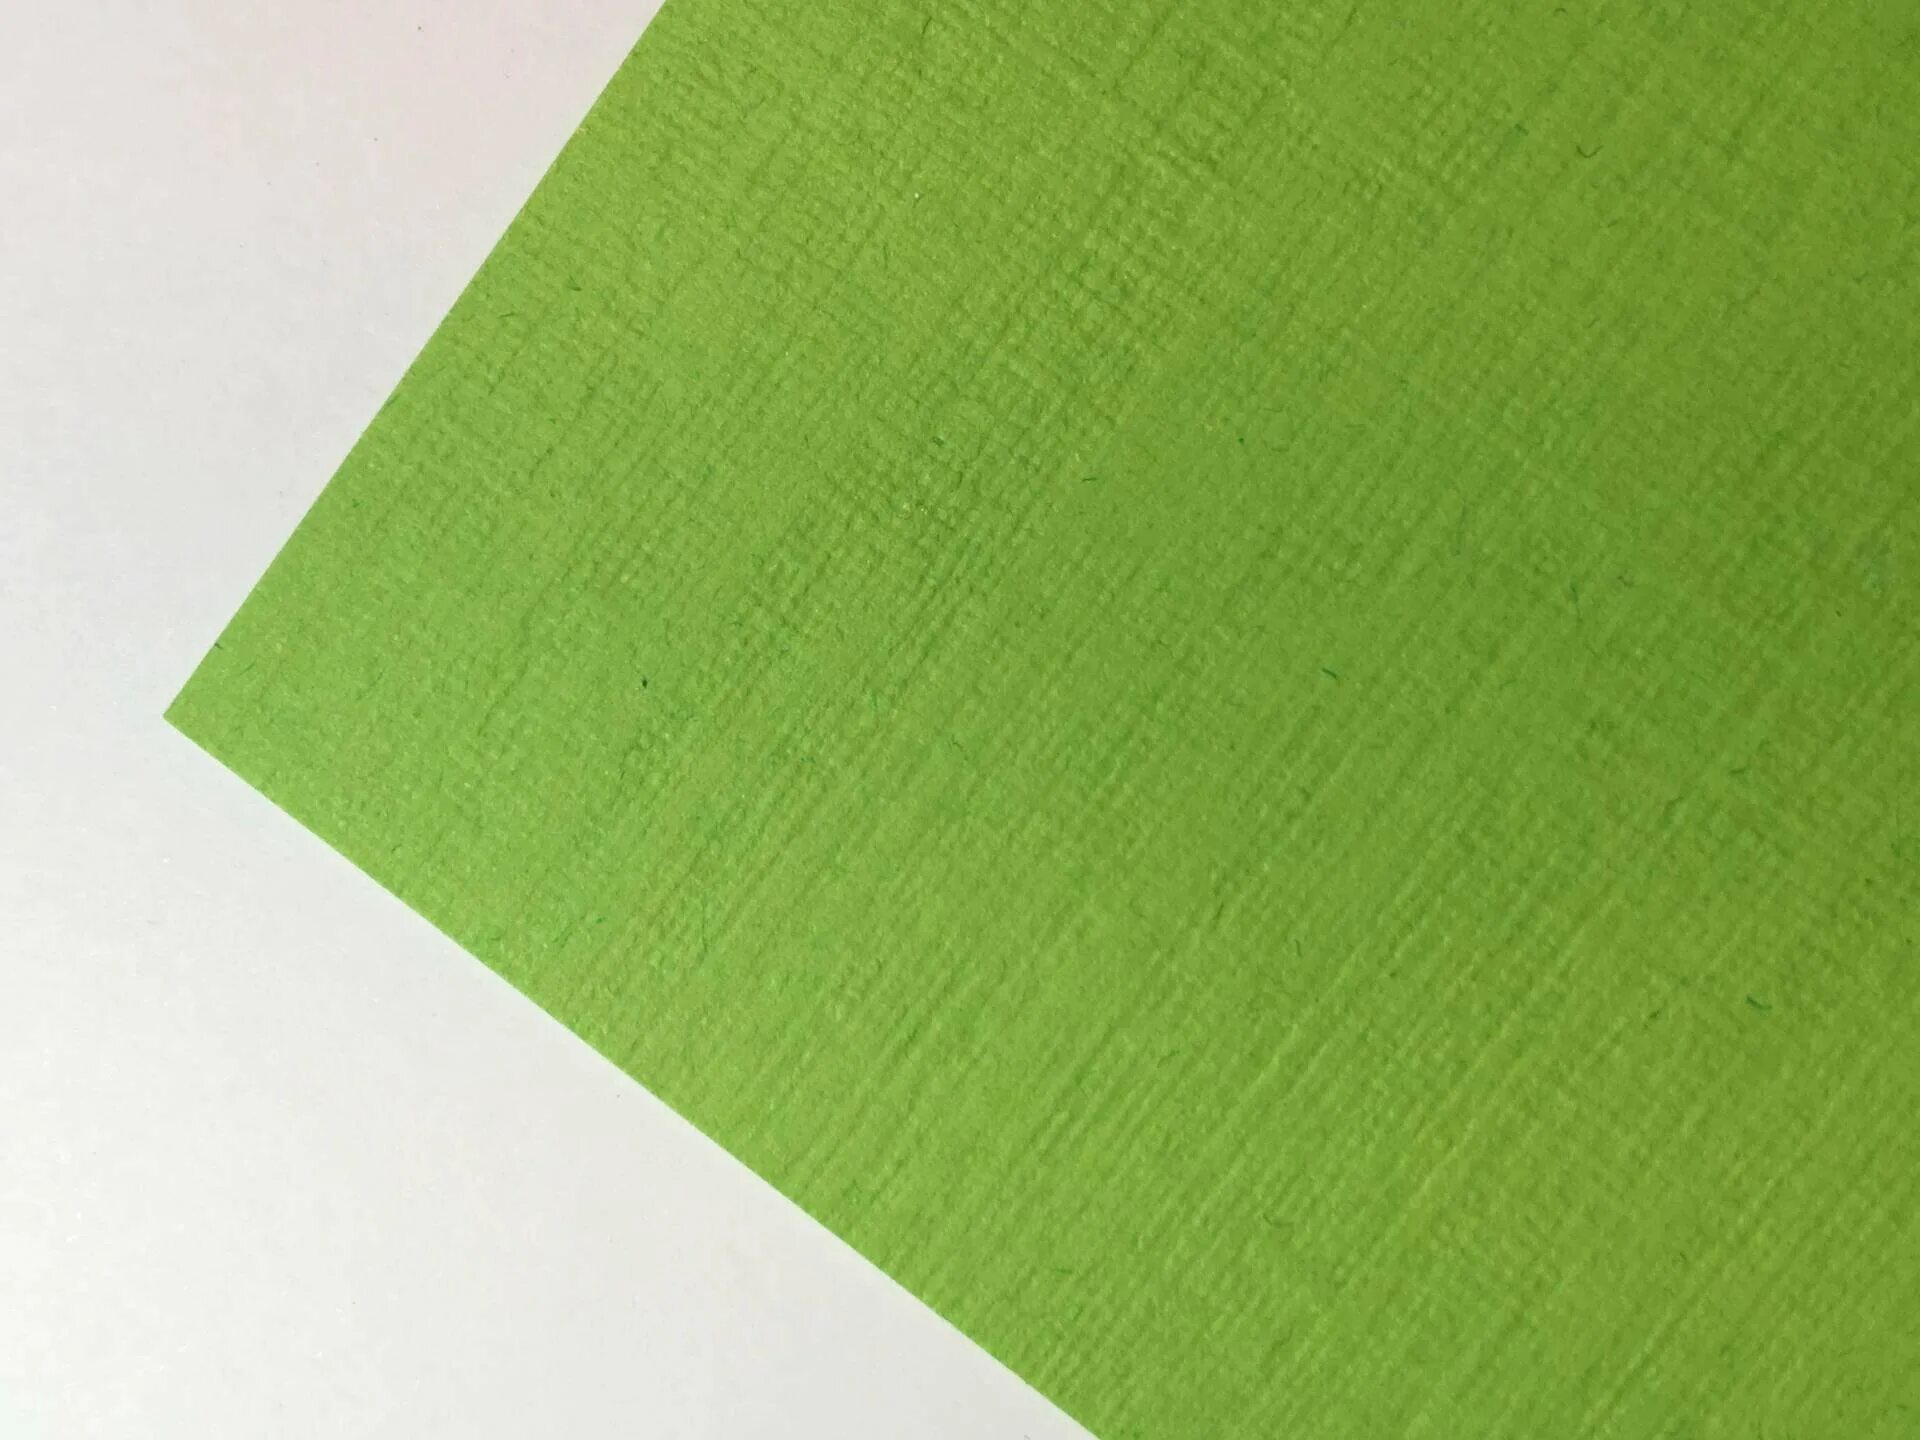 Sirio Color /e Lime e20 Denim. Картон Sirio /e Denim e20. Sadipal Sirio тонированный дизайнерский картон зеленый. Бумага Сирио крафт.